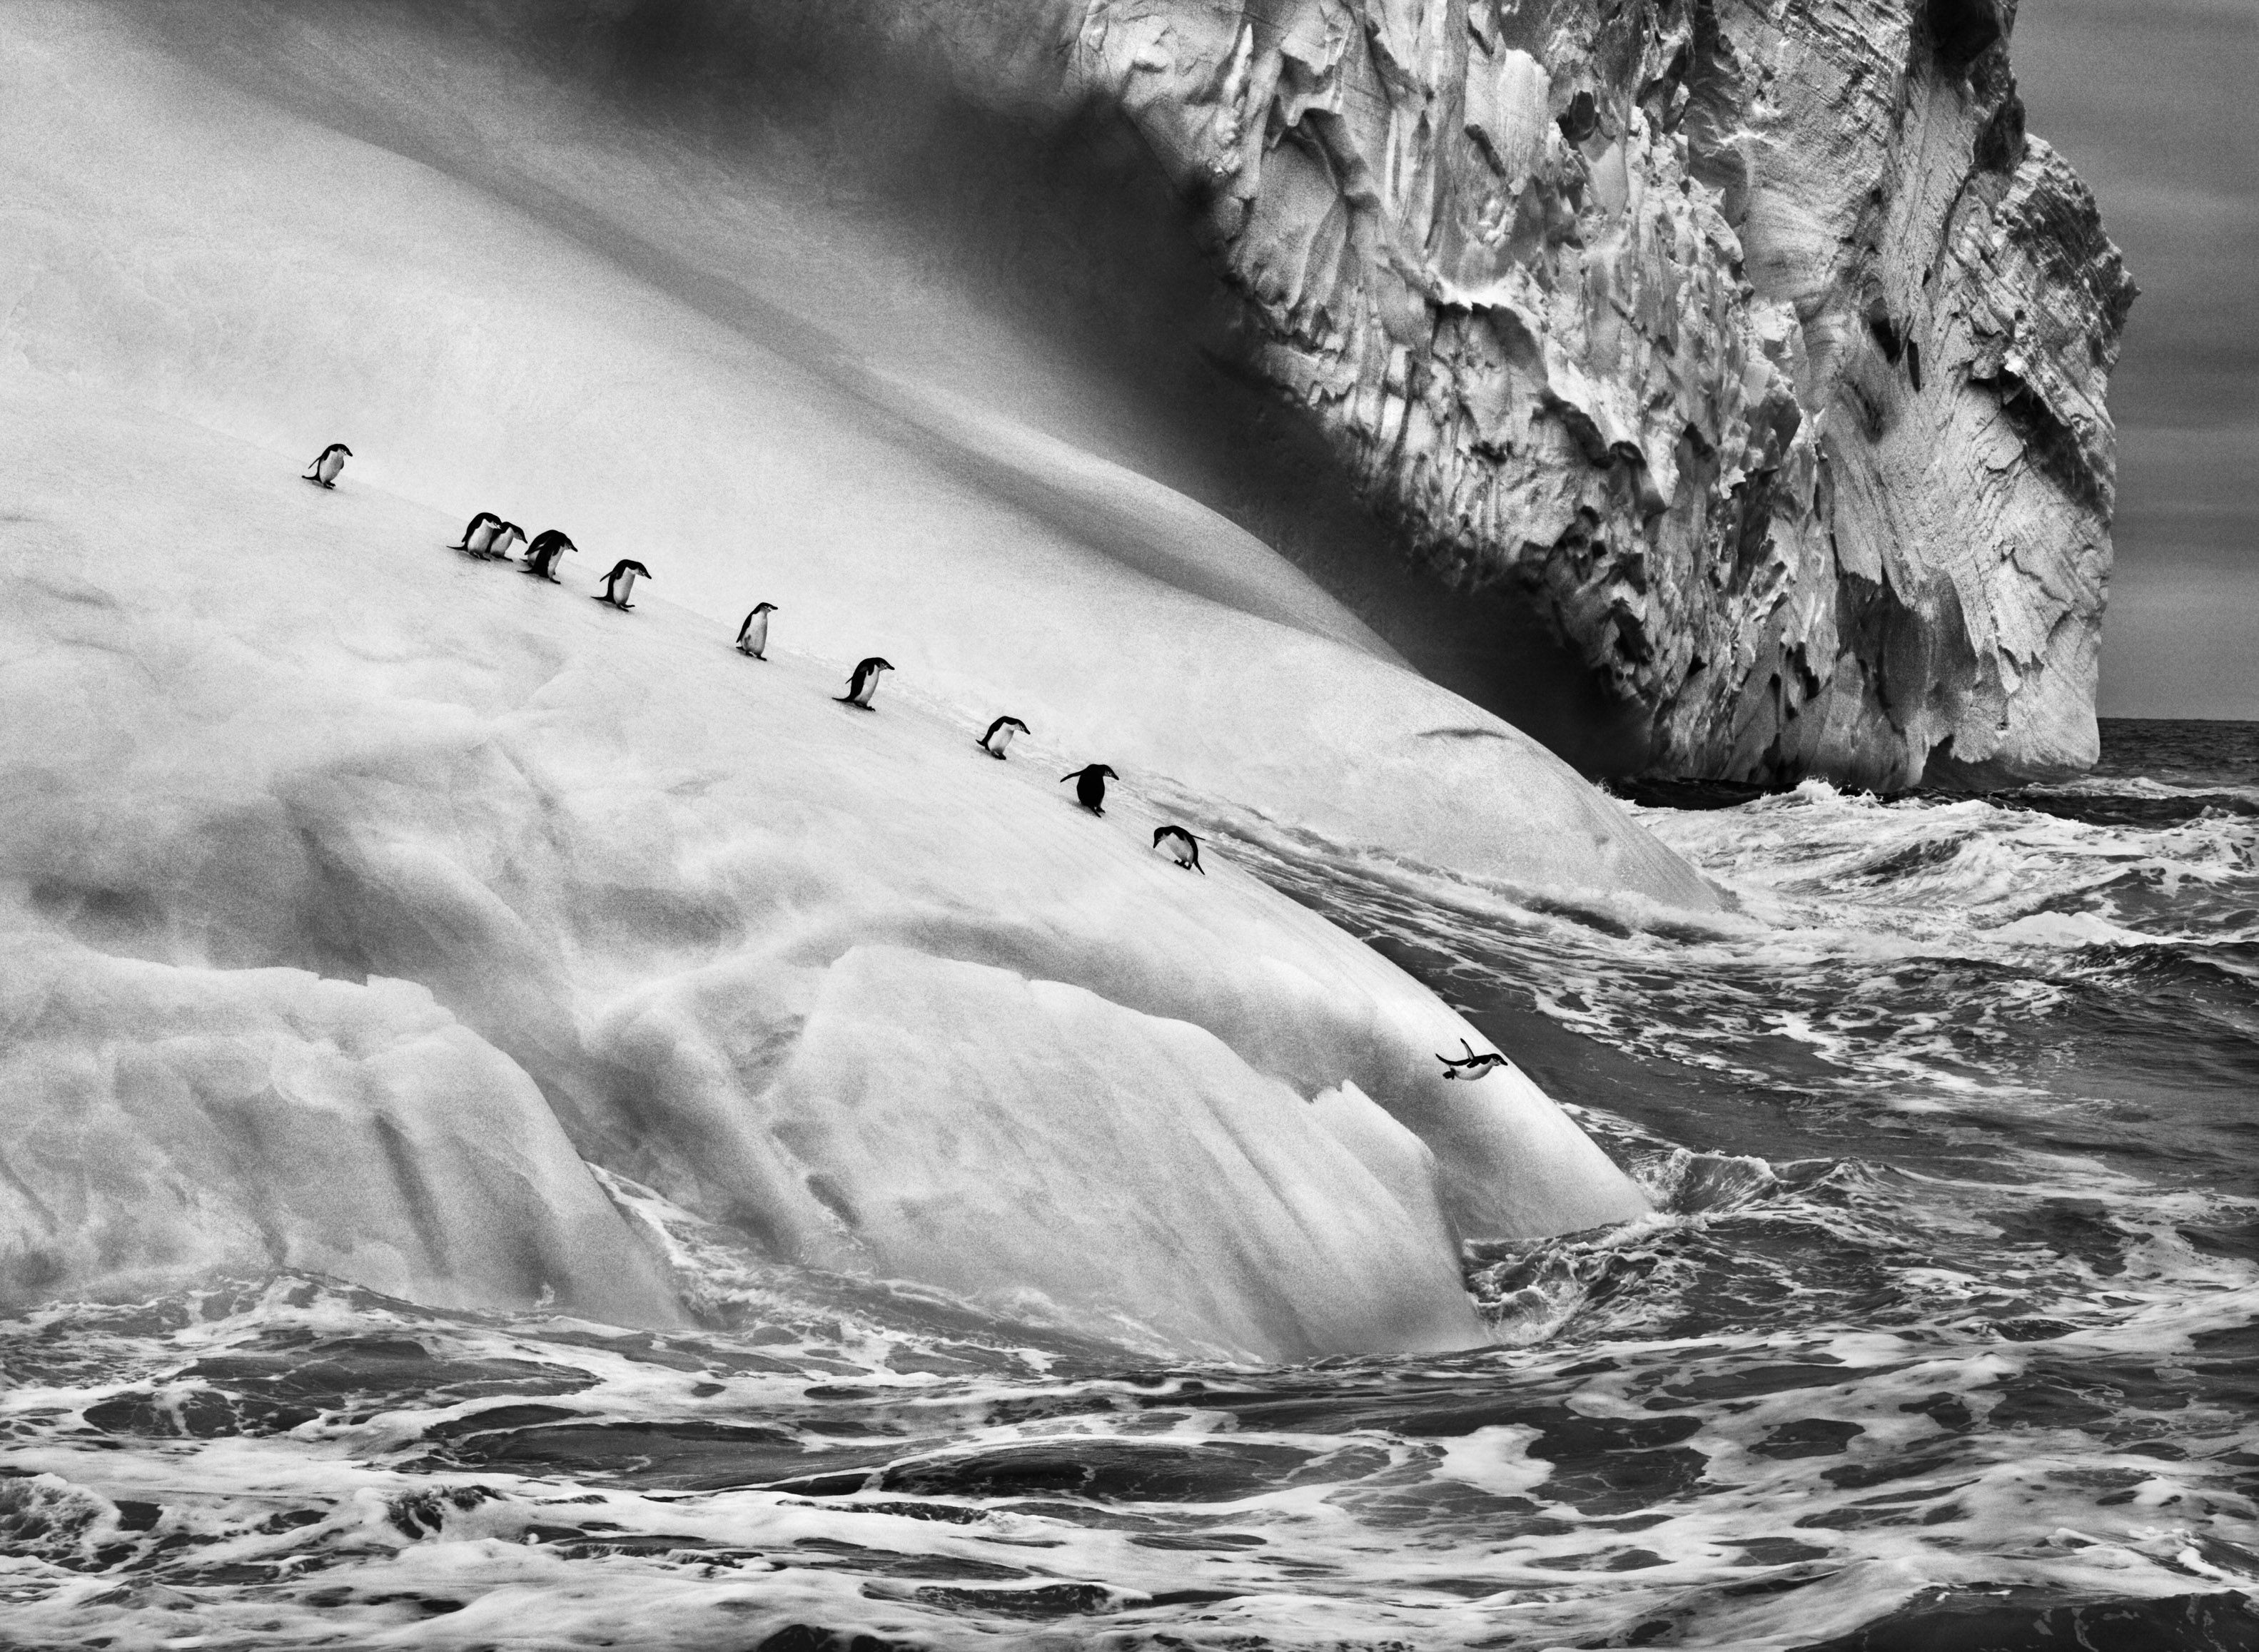 Пингвины на айсберге, Южные Сандвичевы острова, 2009. Автор Себастьян Сальгадо